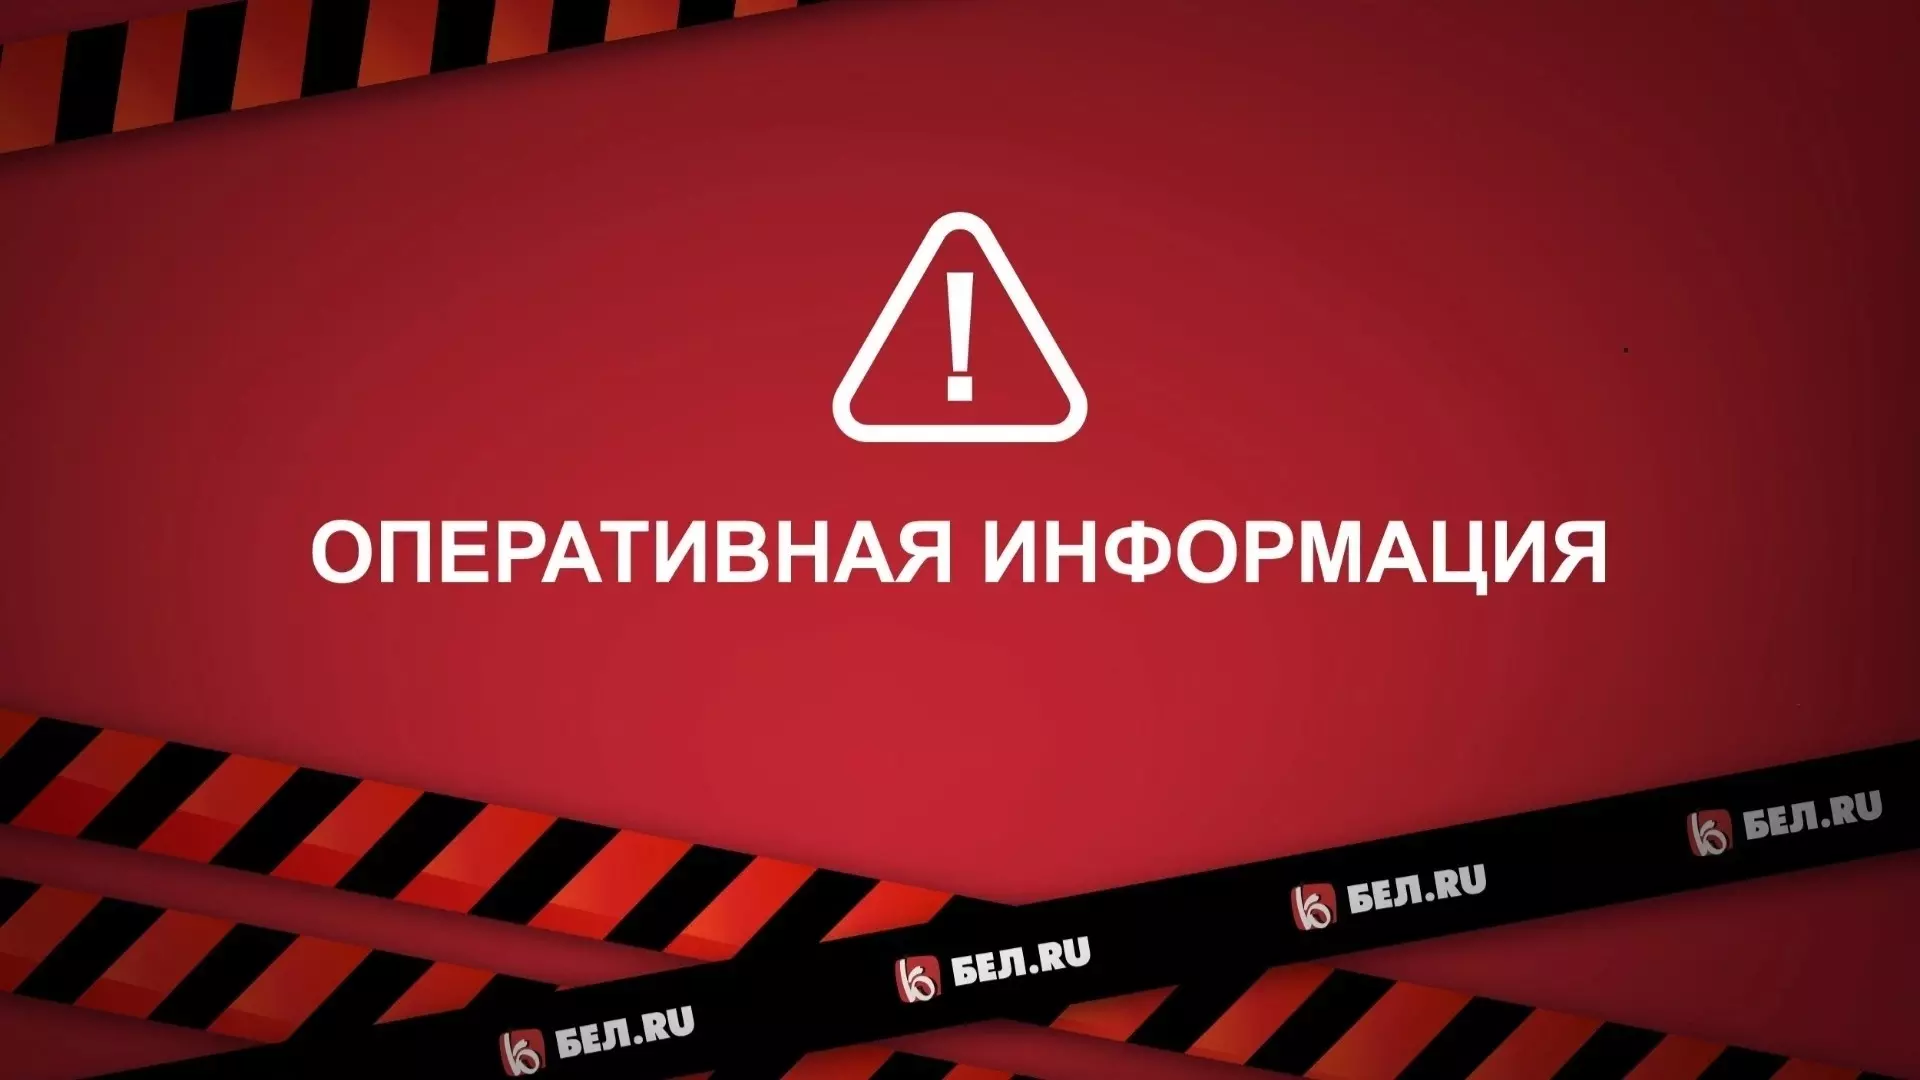 В Белгороде и Белгородском районе объявили ракетную опасность